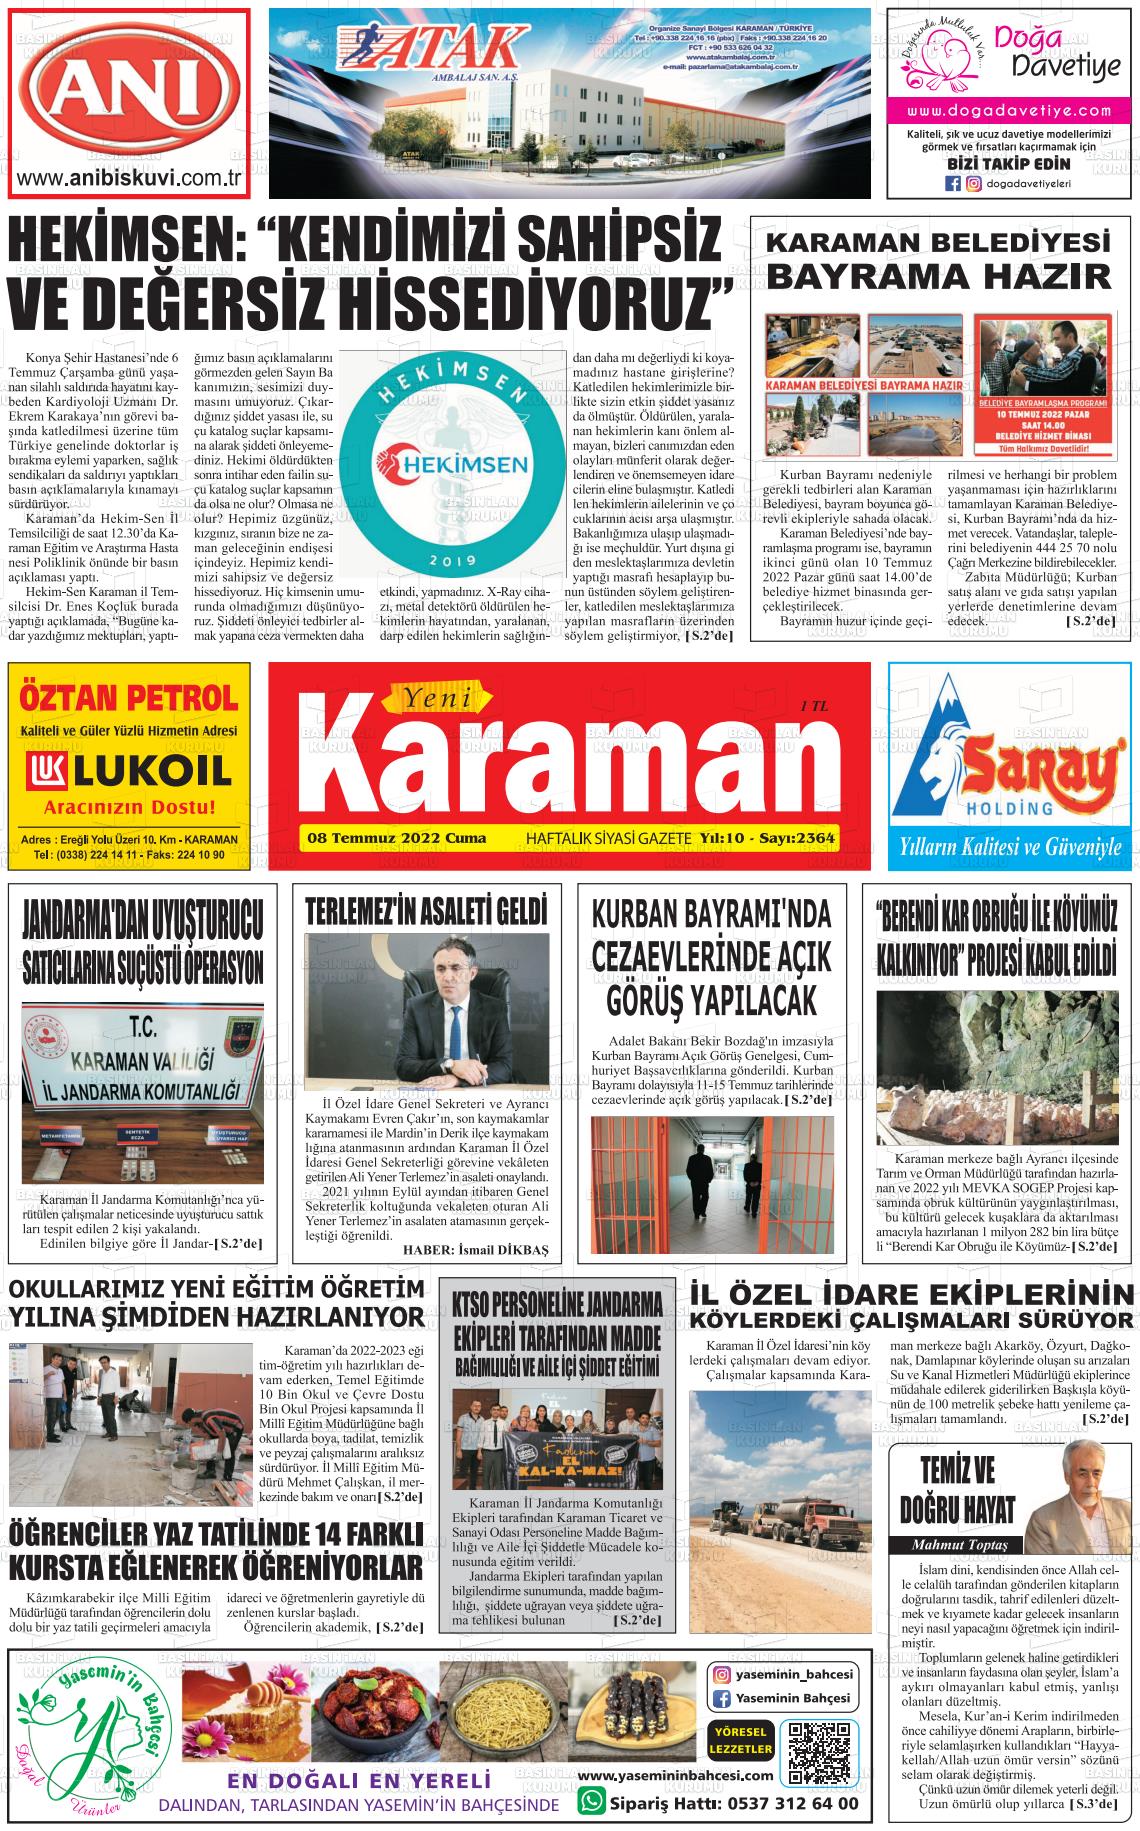 08 Temmuz 2022 Yeni Karaman Gazete Manşeti